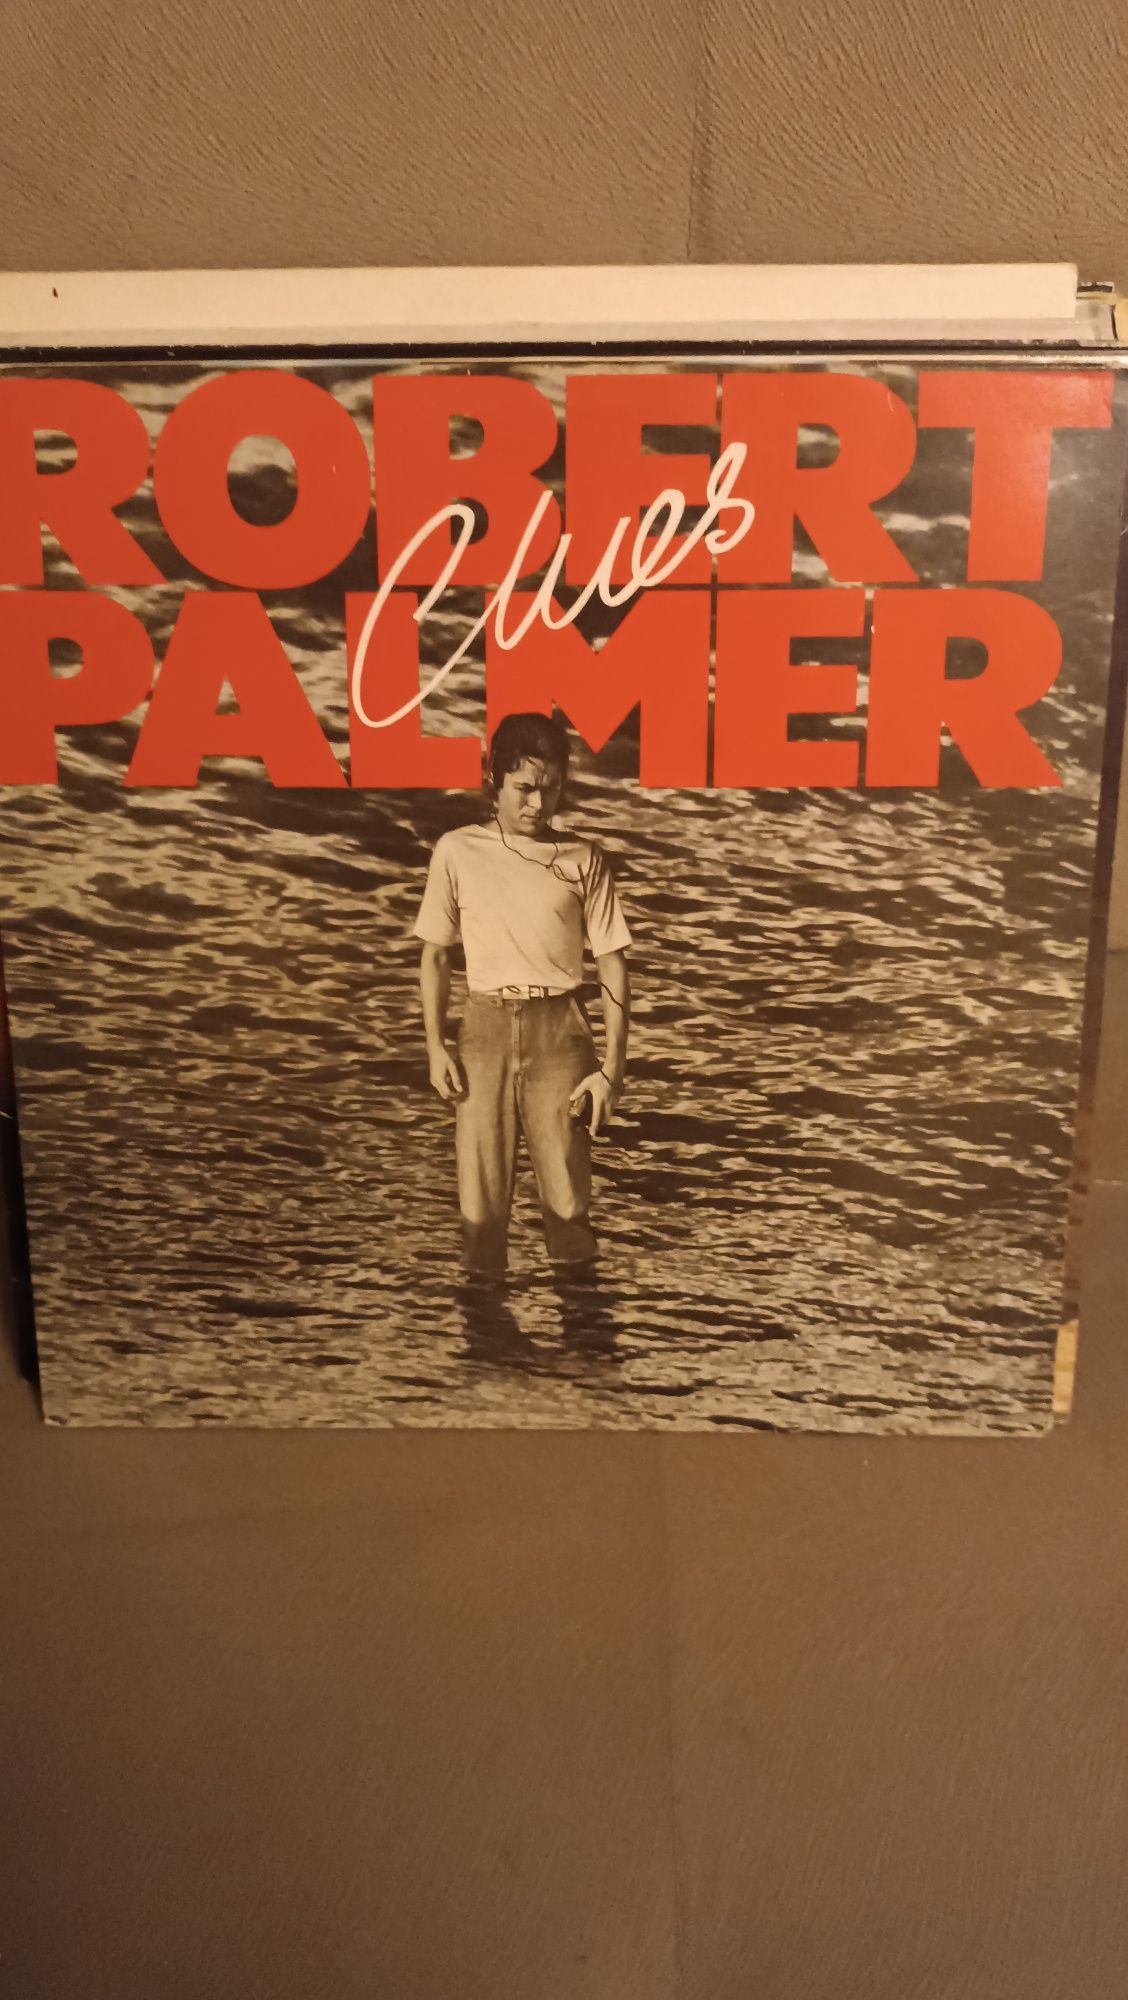 Robert Palmer – Clues